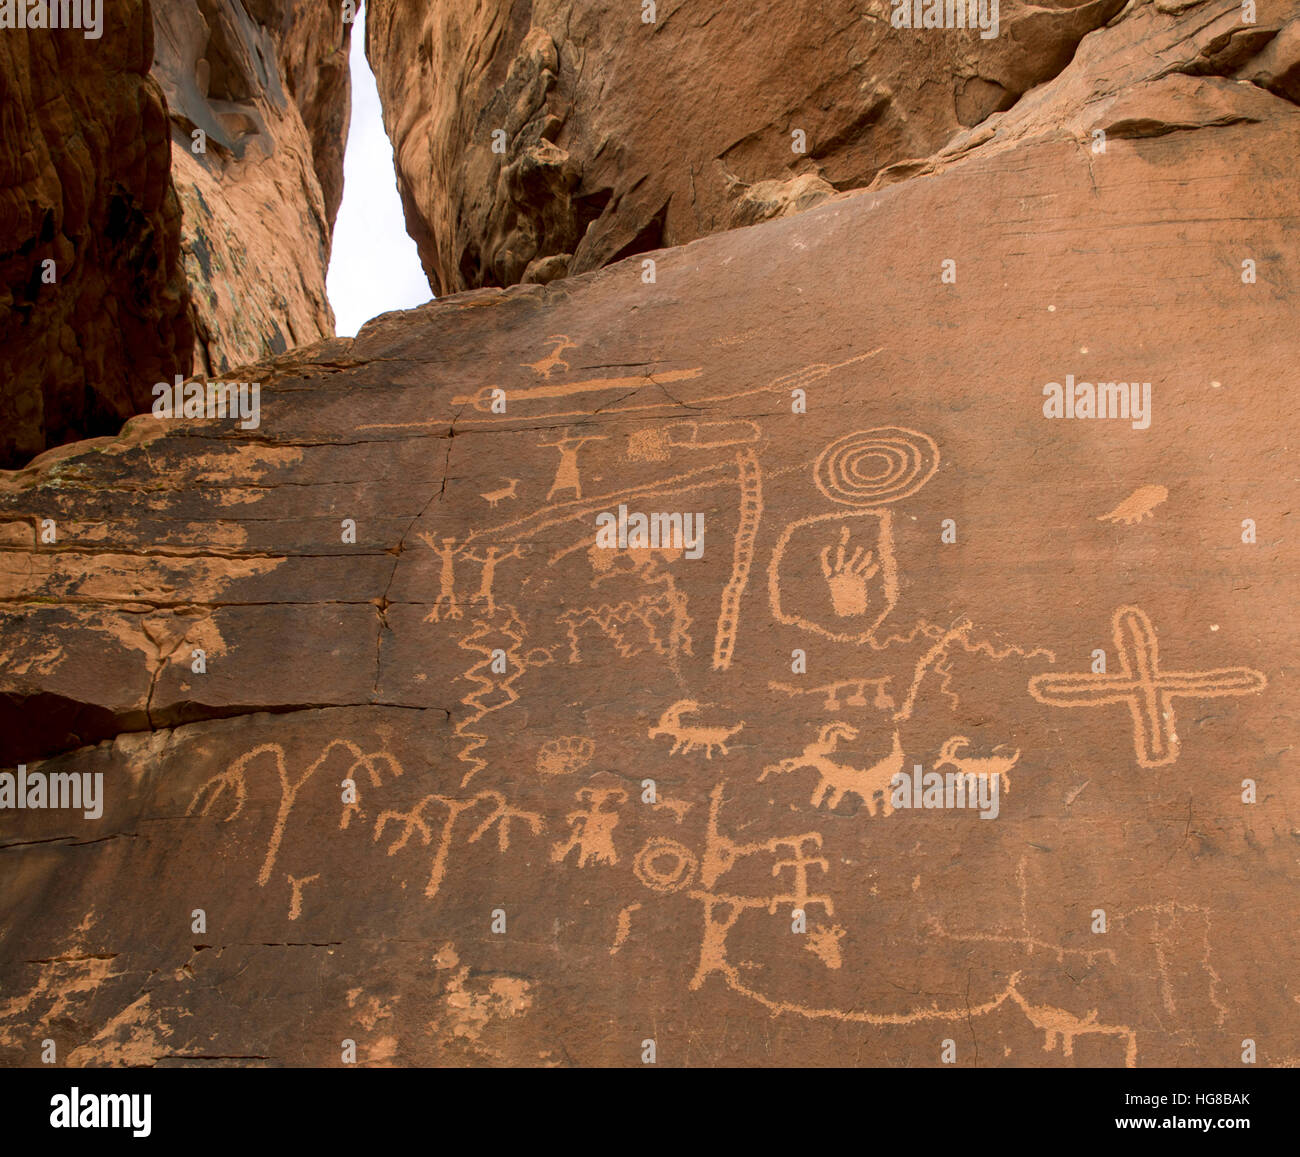 Por petroglifos Nativos Americanos Anasazi, Atlatl Rock, El Valle de Fuego, Nevada, EE.UU. Foto de stock